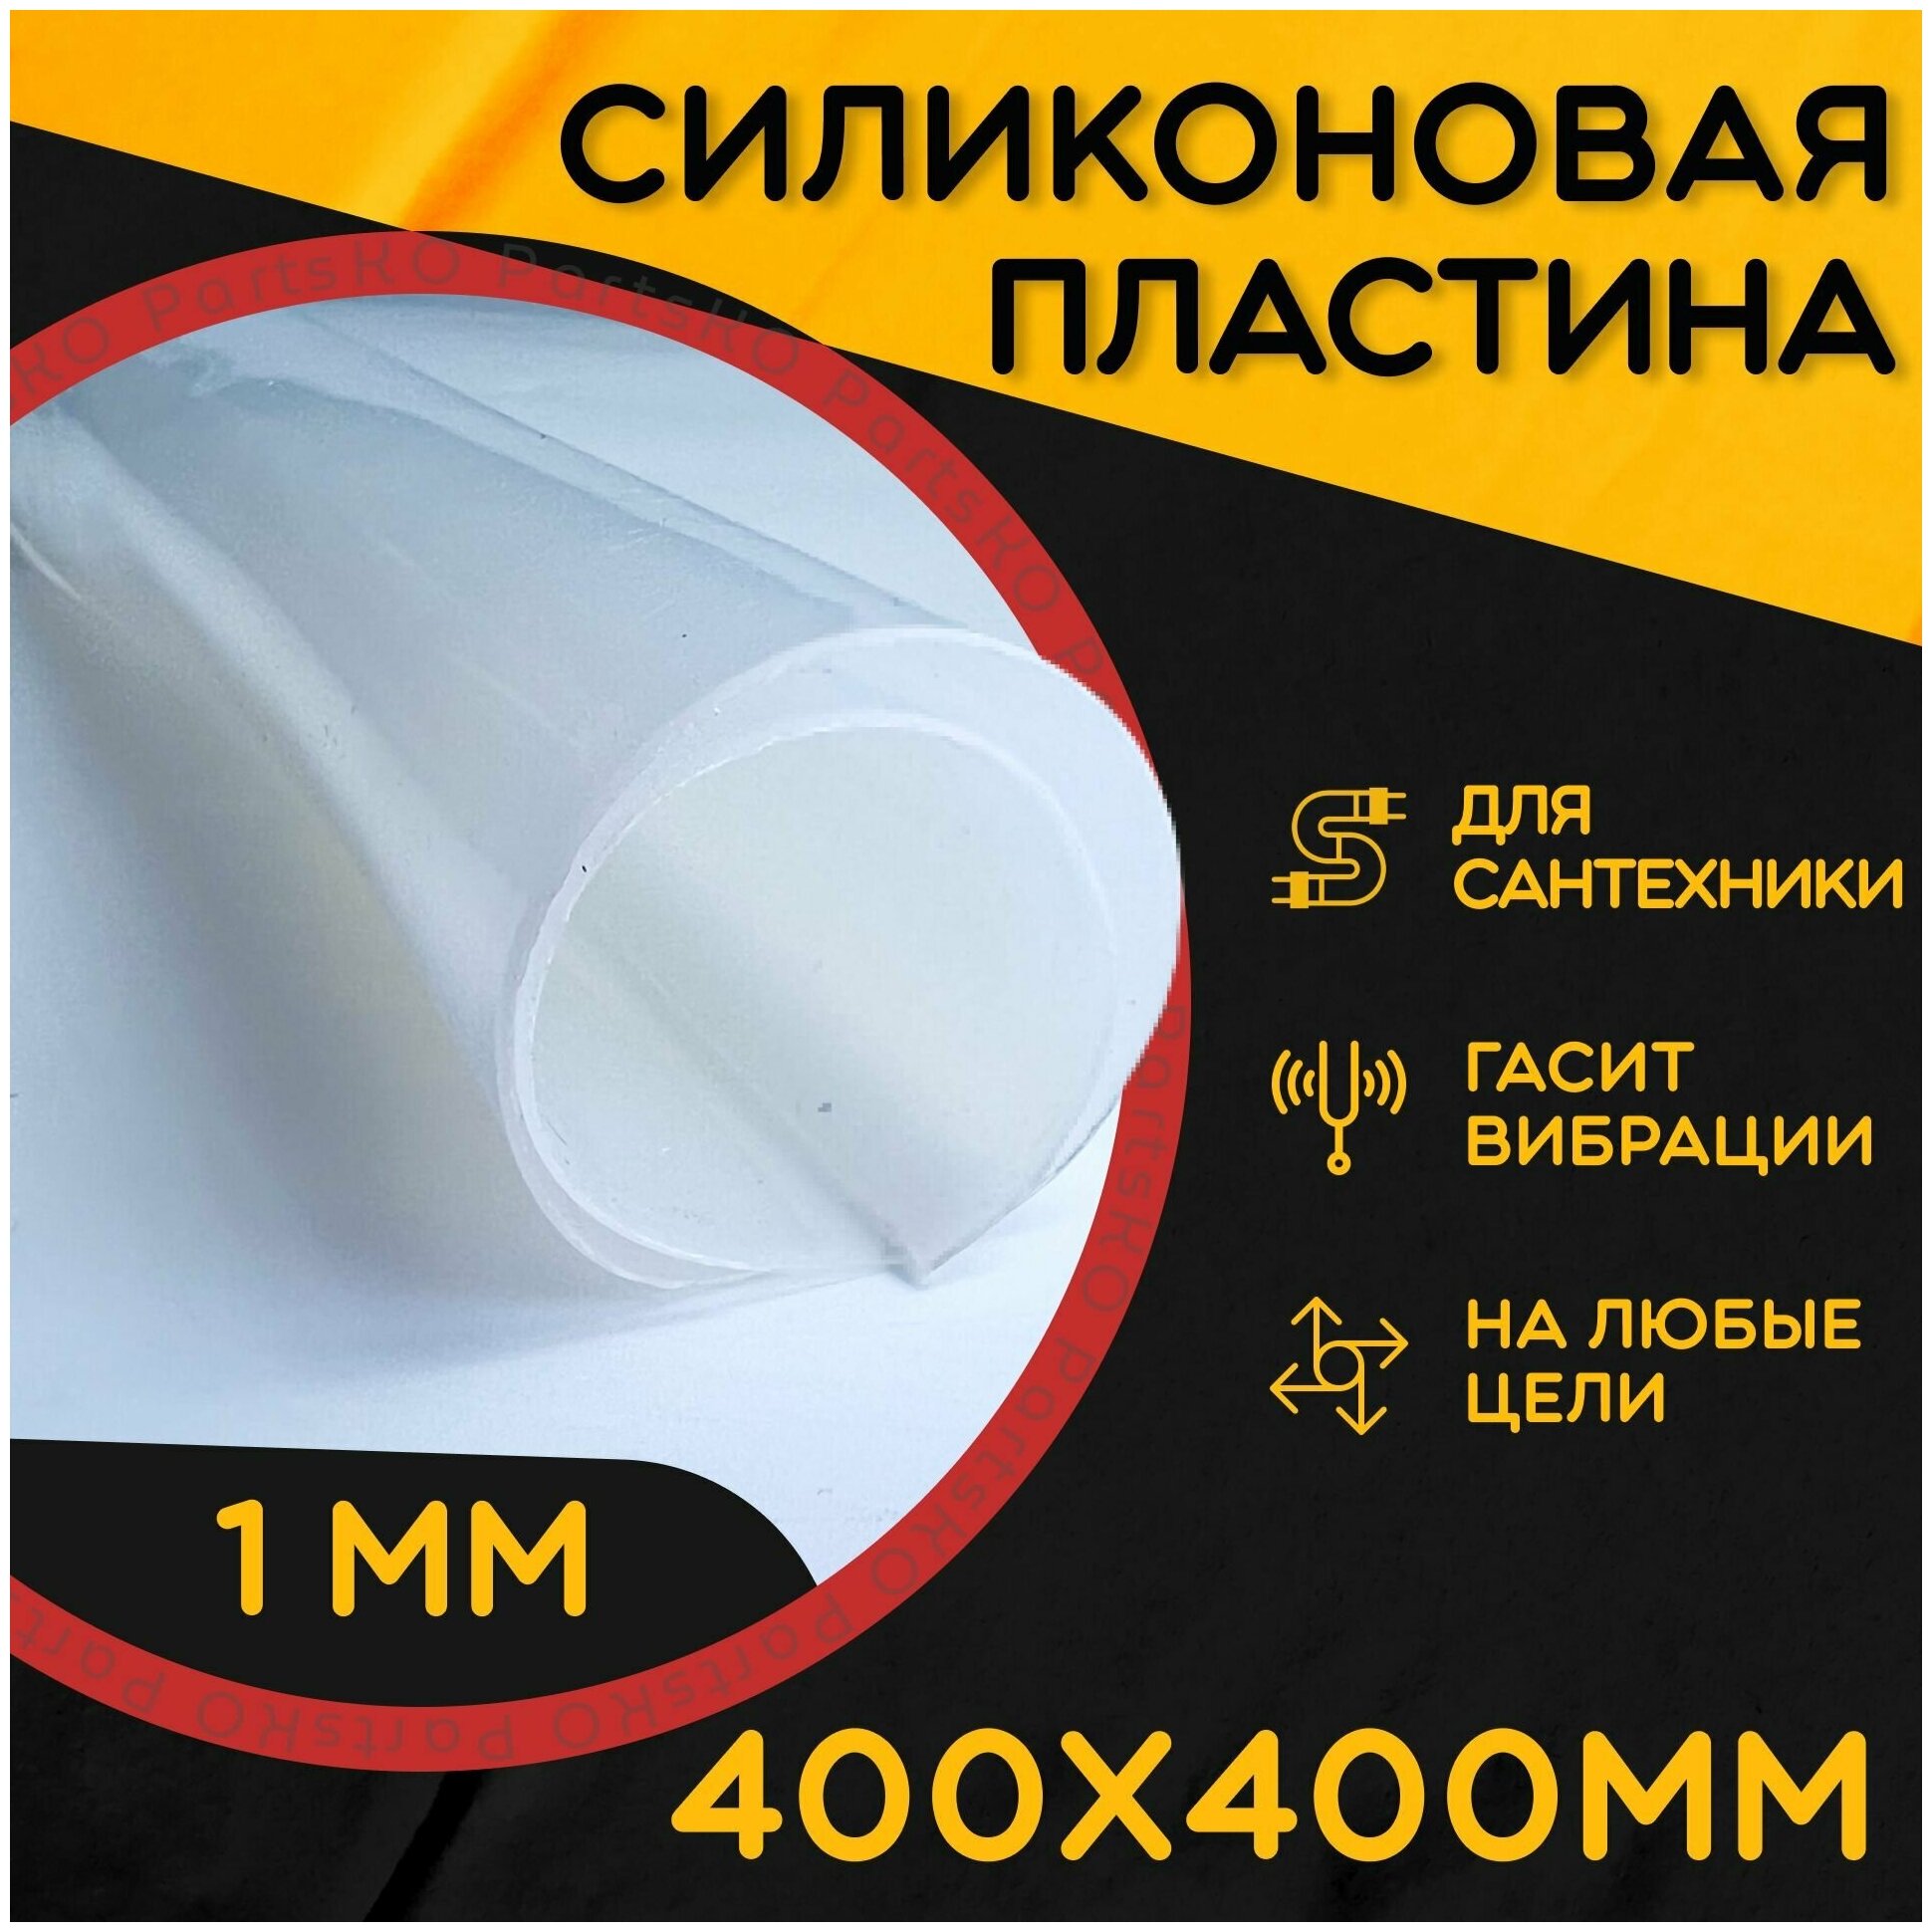 Силиконовая резина термостойкая. Толщина 1 мм. Размер 400х400 мм / Уплотнительная прокладка / Силиконовая пластина белого цвета.